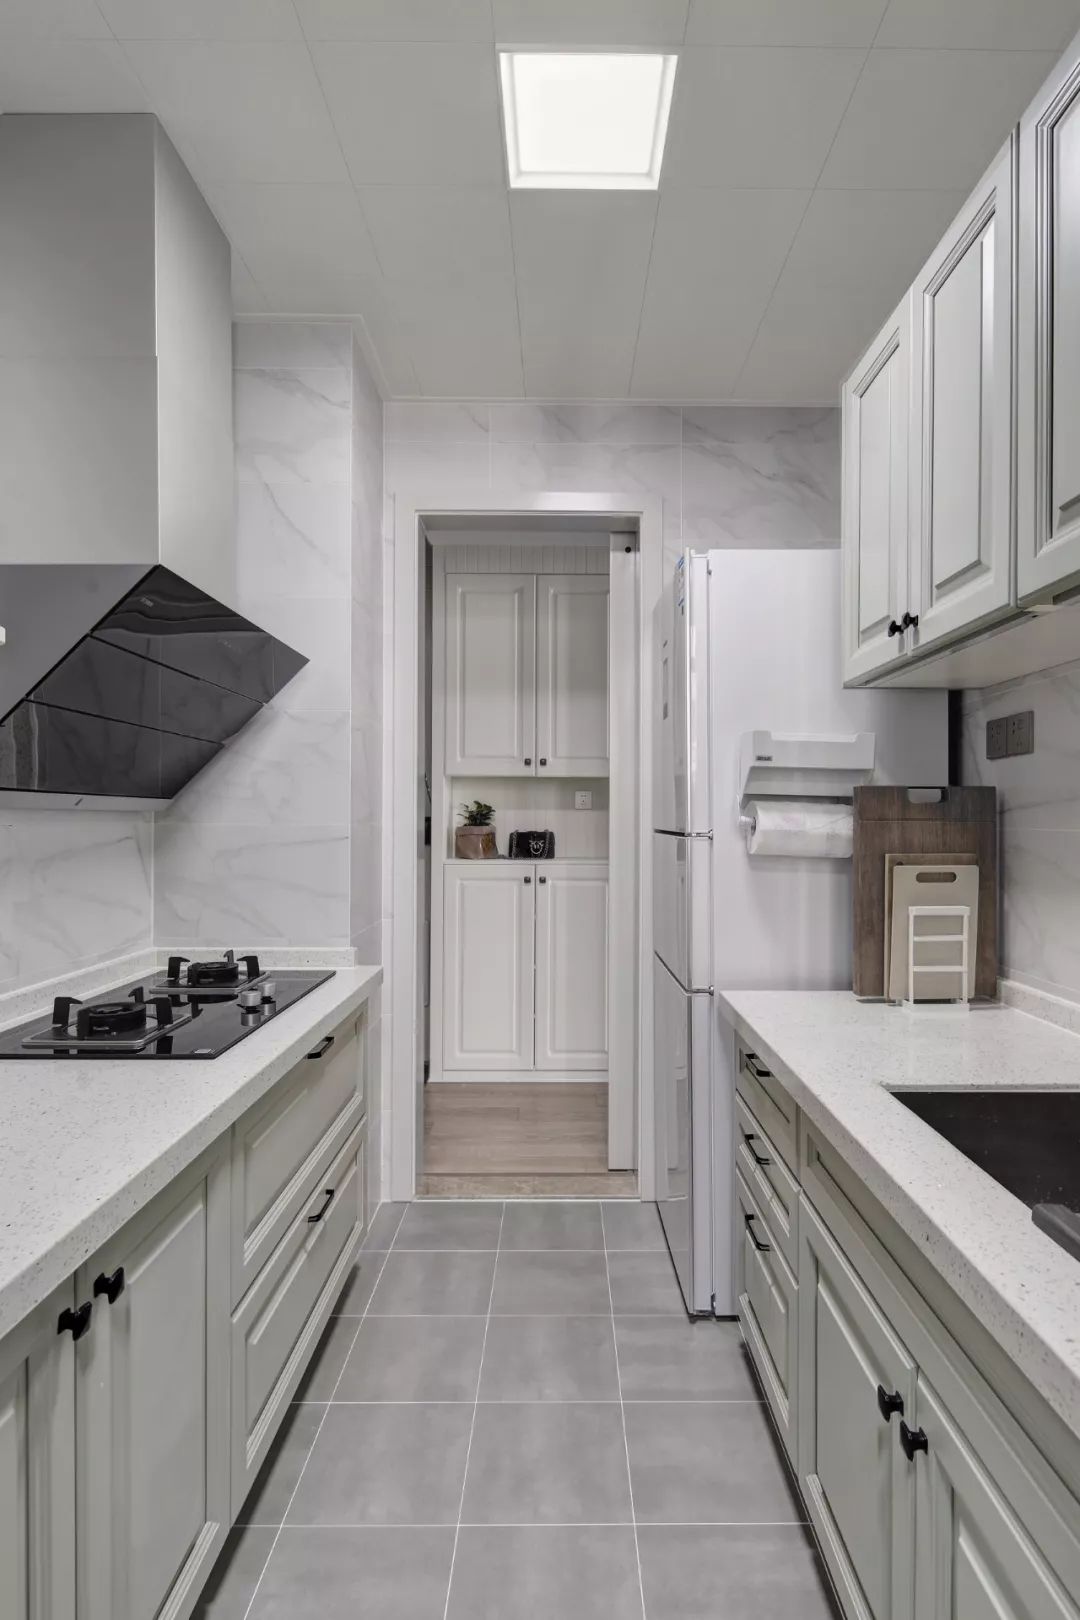 厨房地面铺设灰色哑光砖,墙面铺设大理石纹瓷砖,搭配上灰白色的